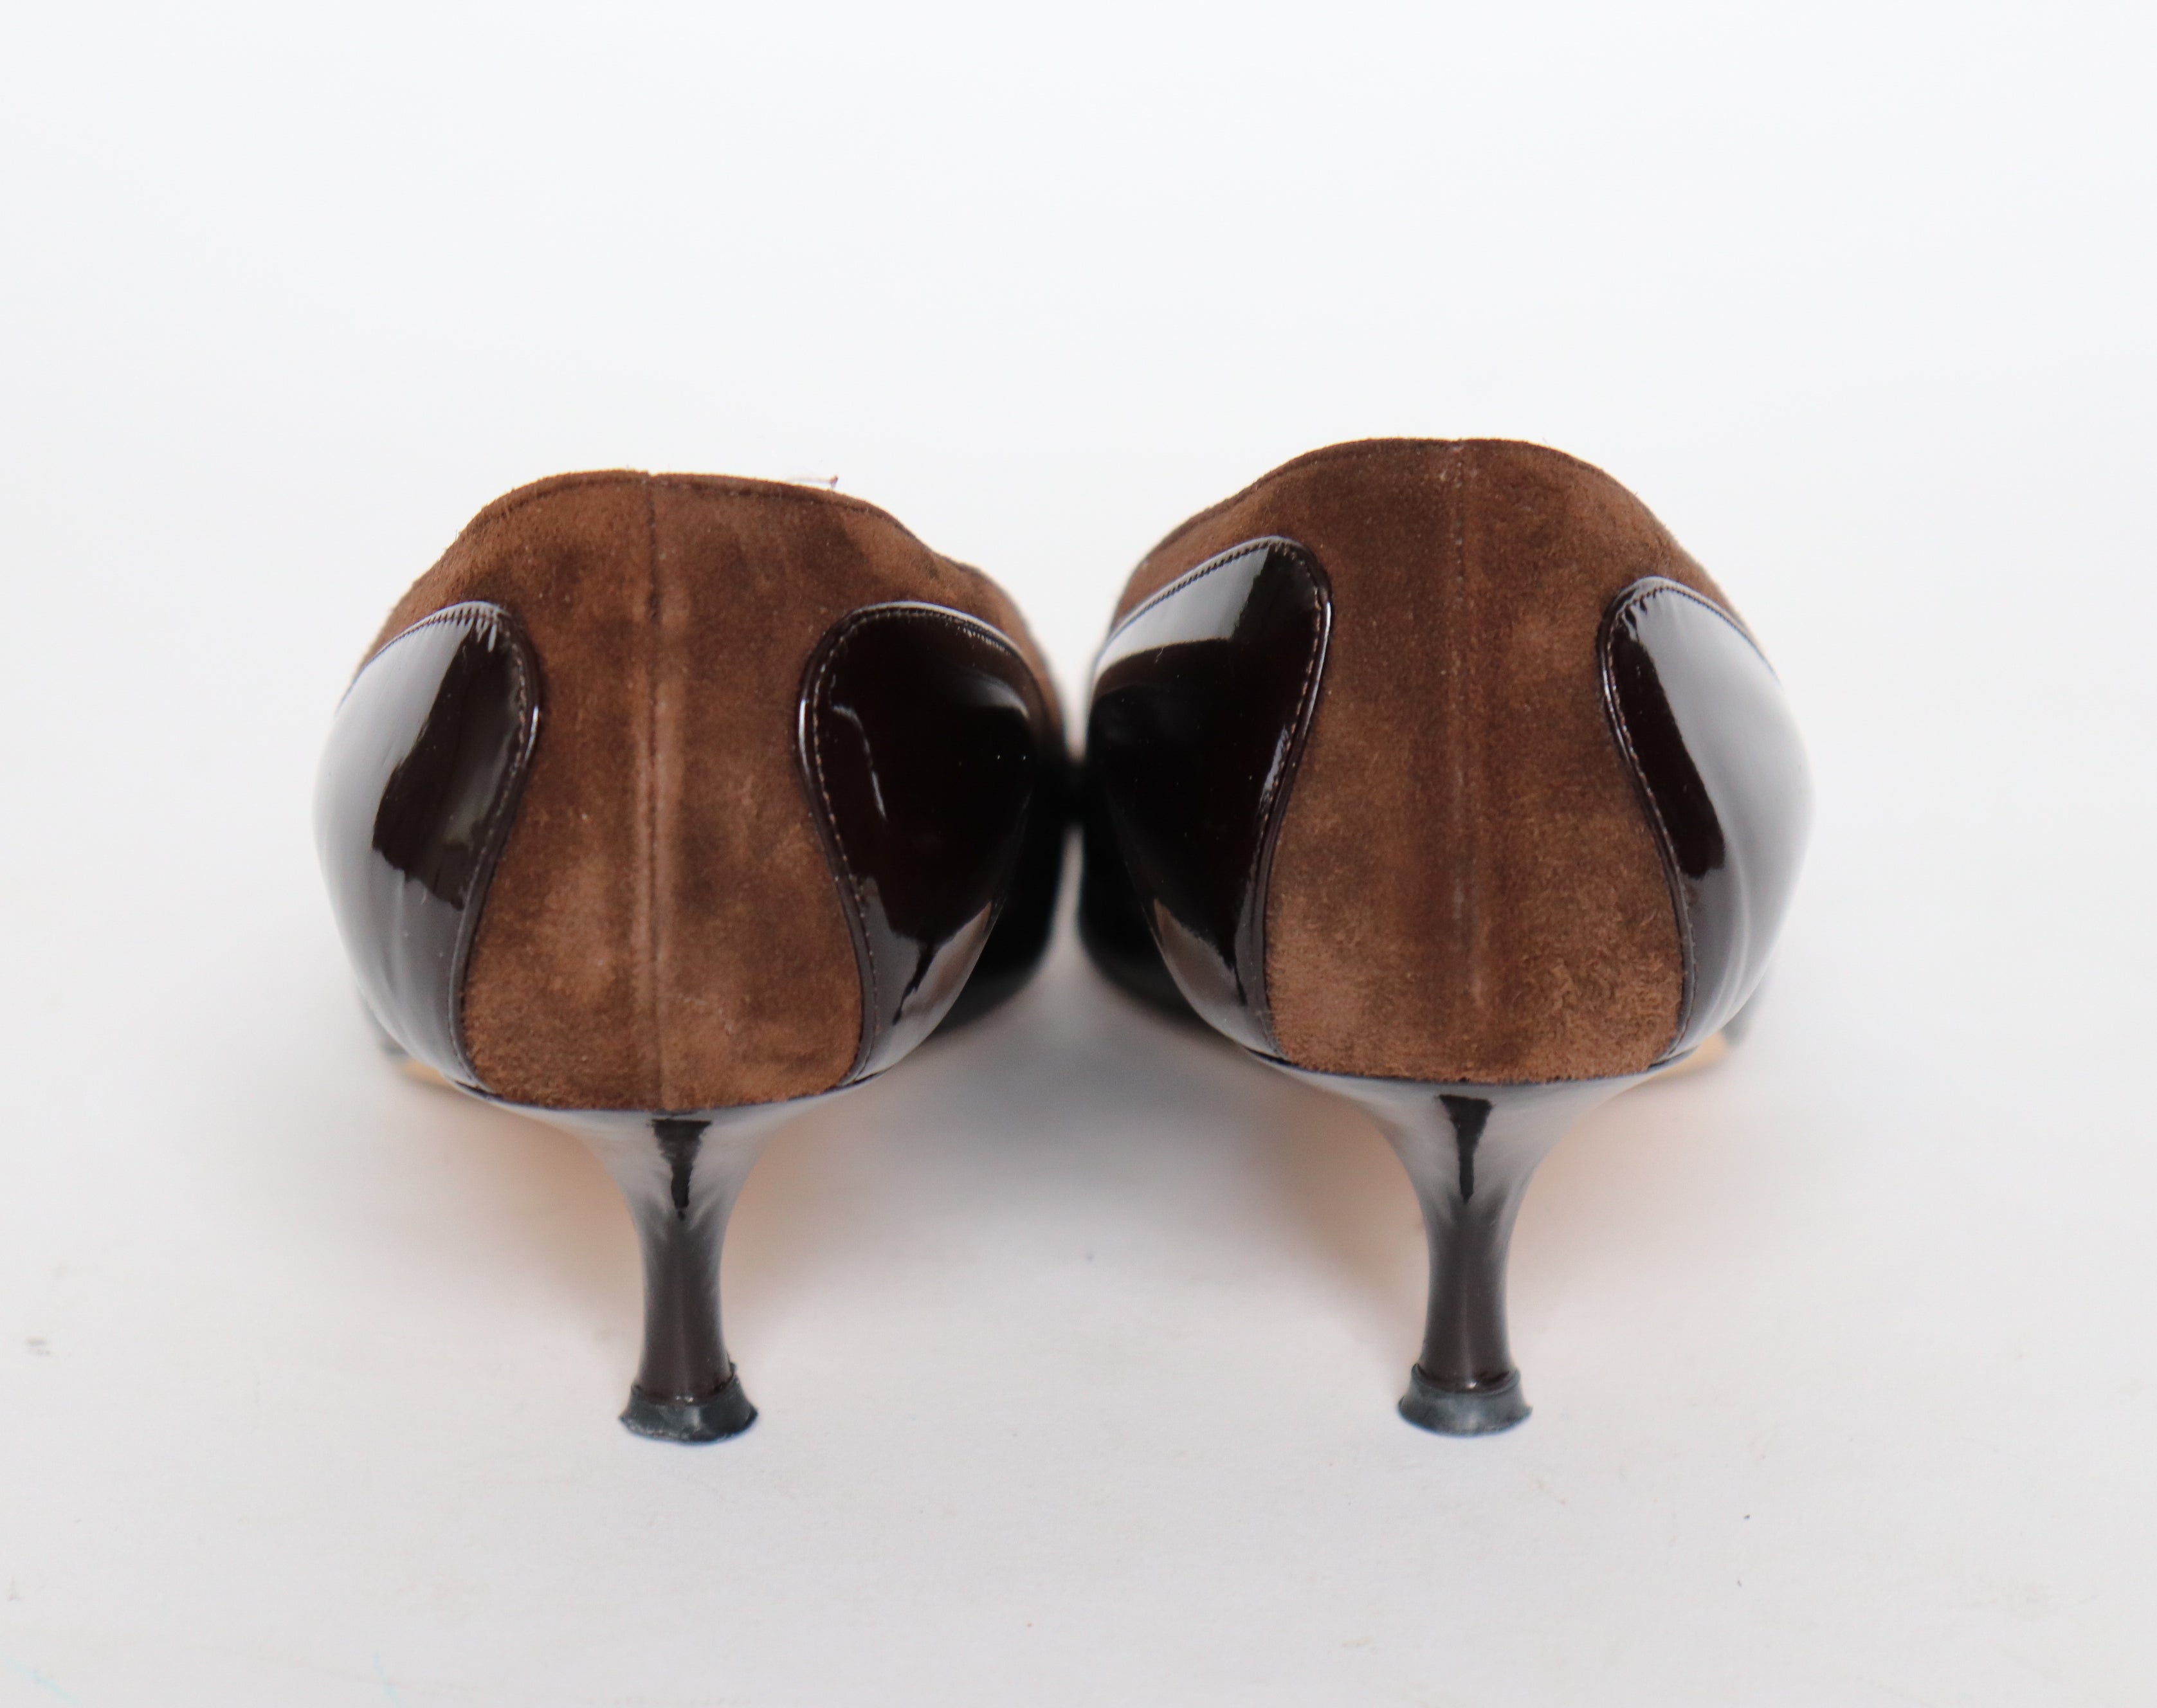 Joseph Azagury Kitten Heel Pumps /  Shoes - Leather - 1960s style - 38.5 / 5.5